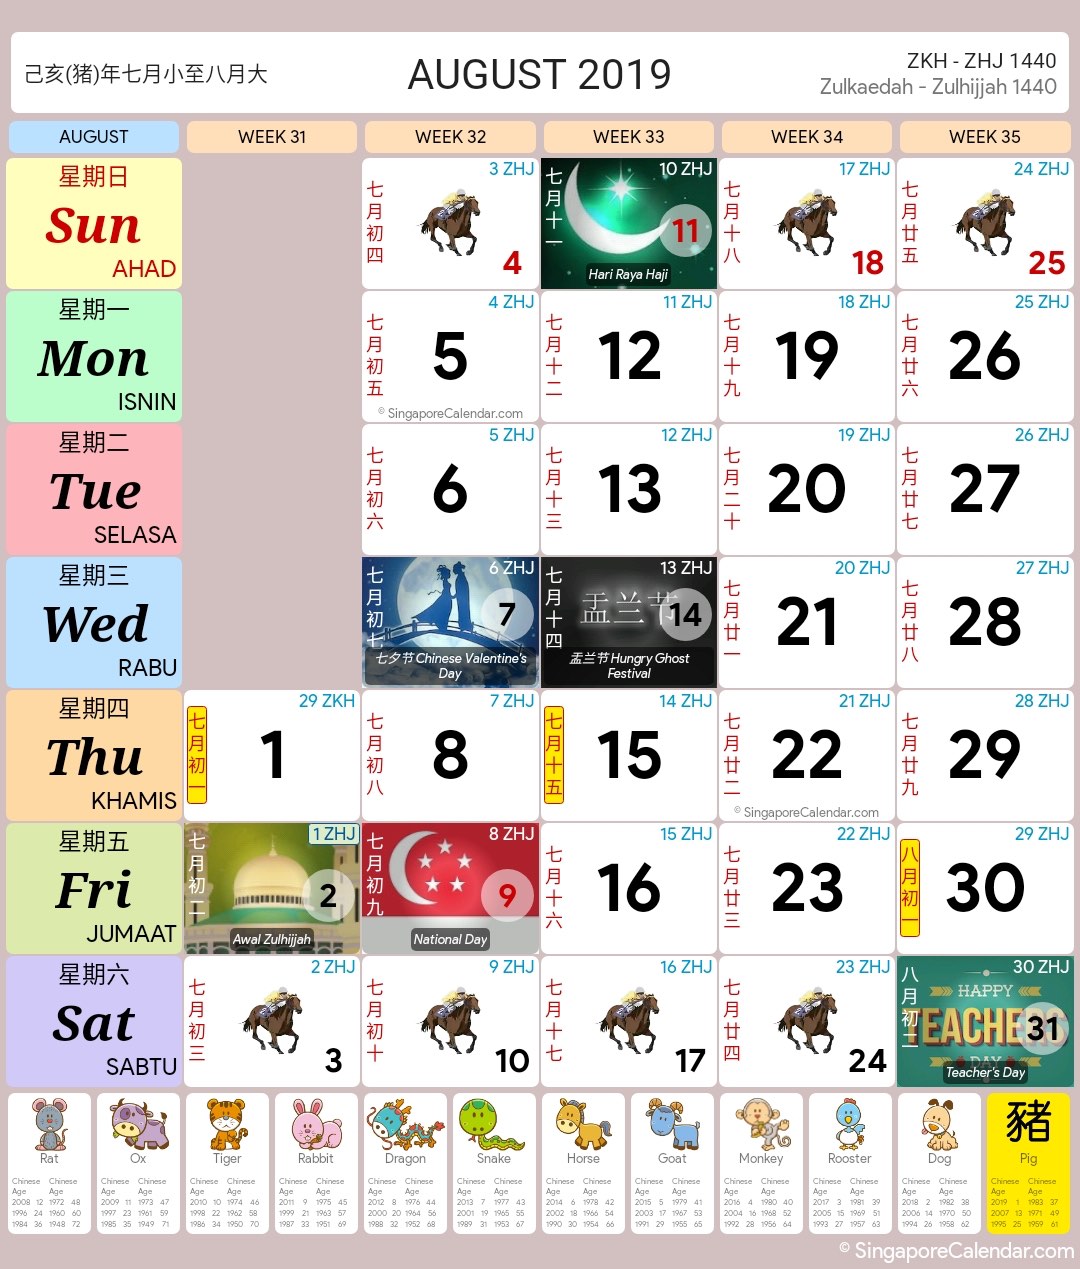 Singapore Calendar Year 2019 Singapore Calendar